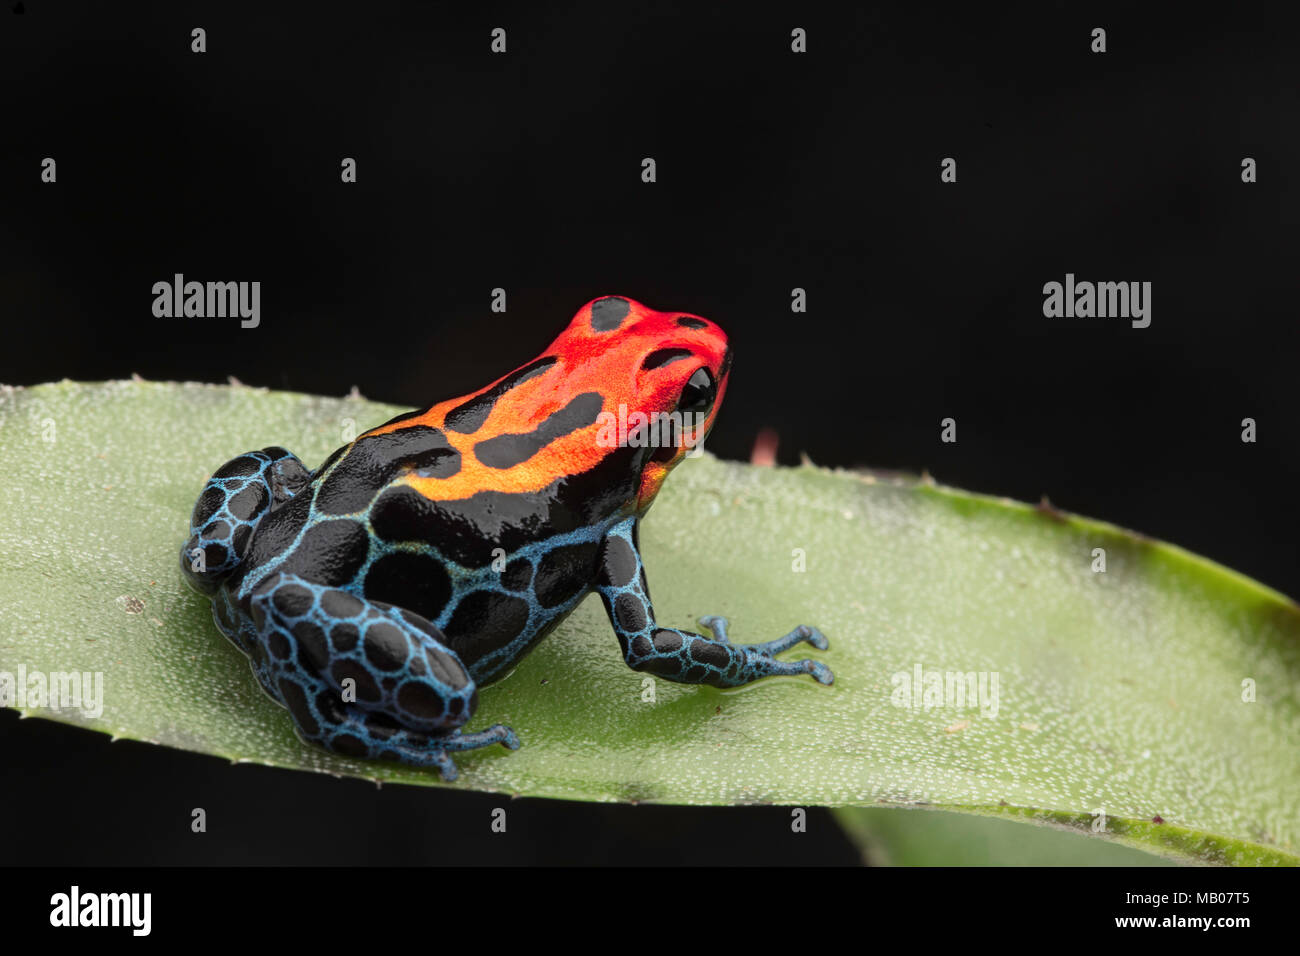 Poison dart Frog amazoniennes, Ranitomeya ventrimaculata, Arena Blanca. Bleu Rouge animal venimeux de la forêt amazonienne du Pérou. Banque D'Images